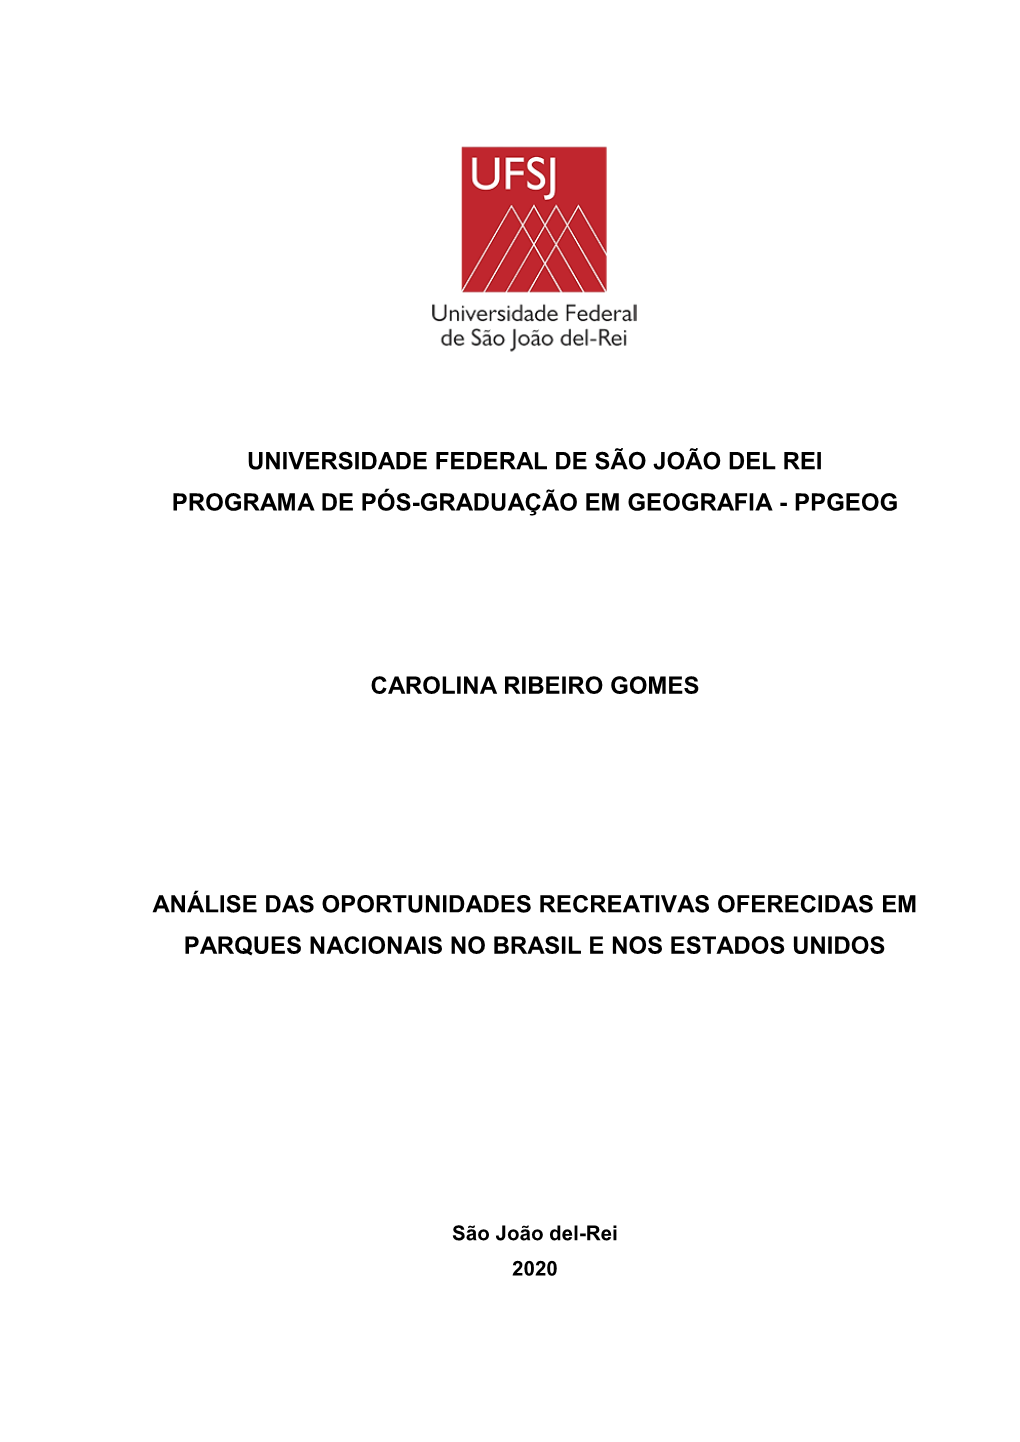 Universidade Federal De São João Del Rei Programa De Pós-Graduação Em Geografia - Ppgeog